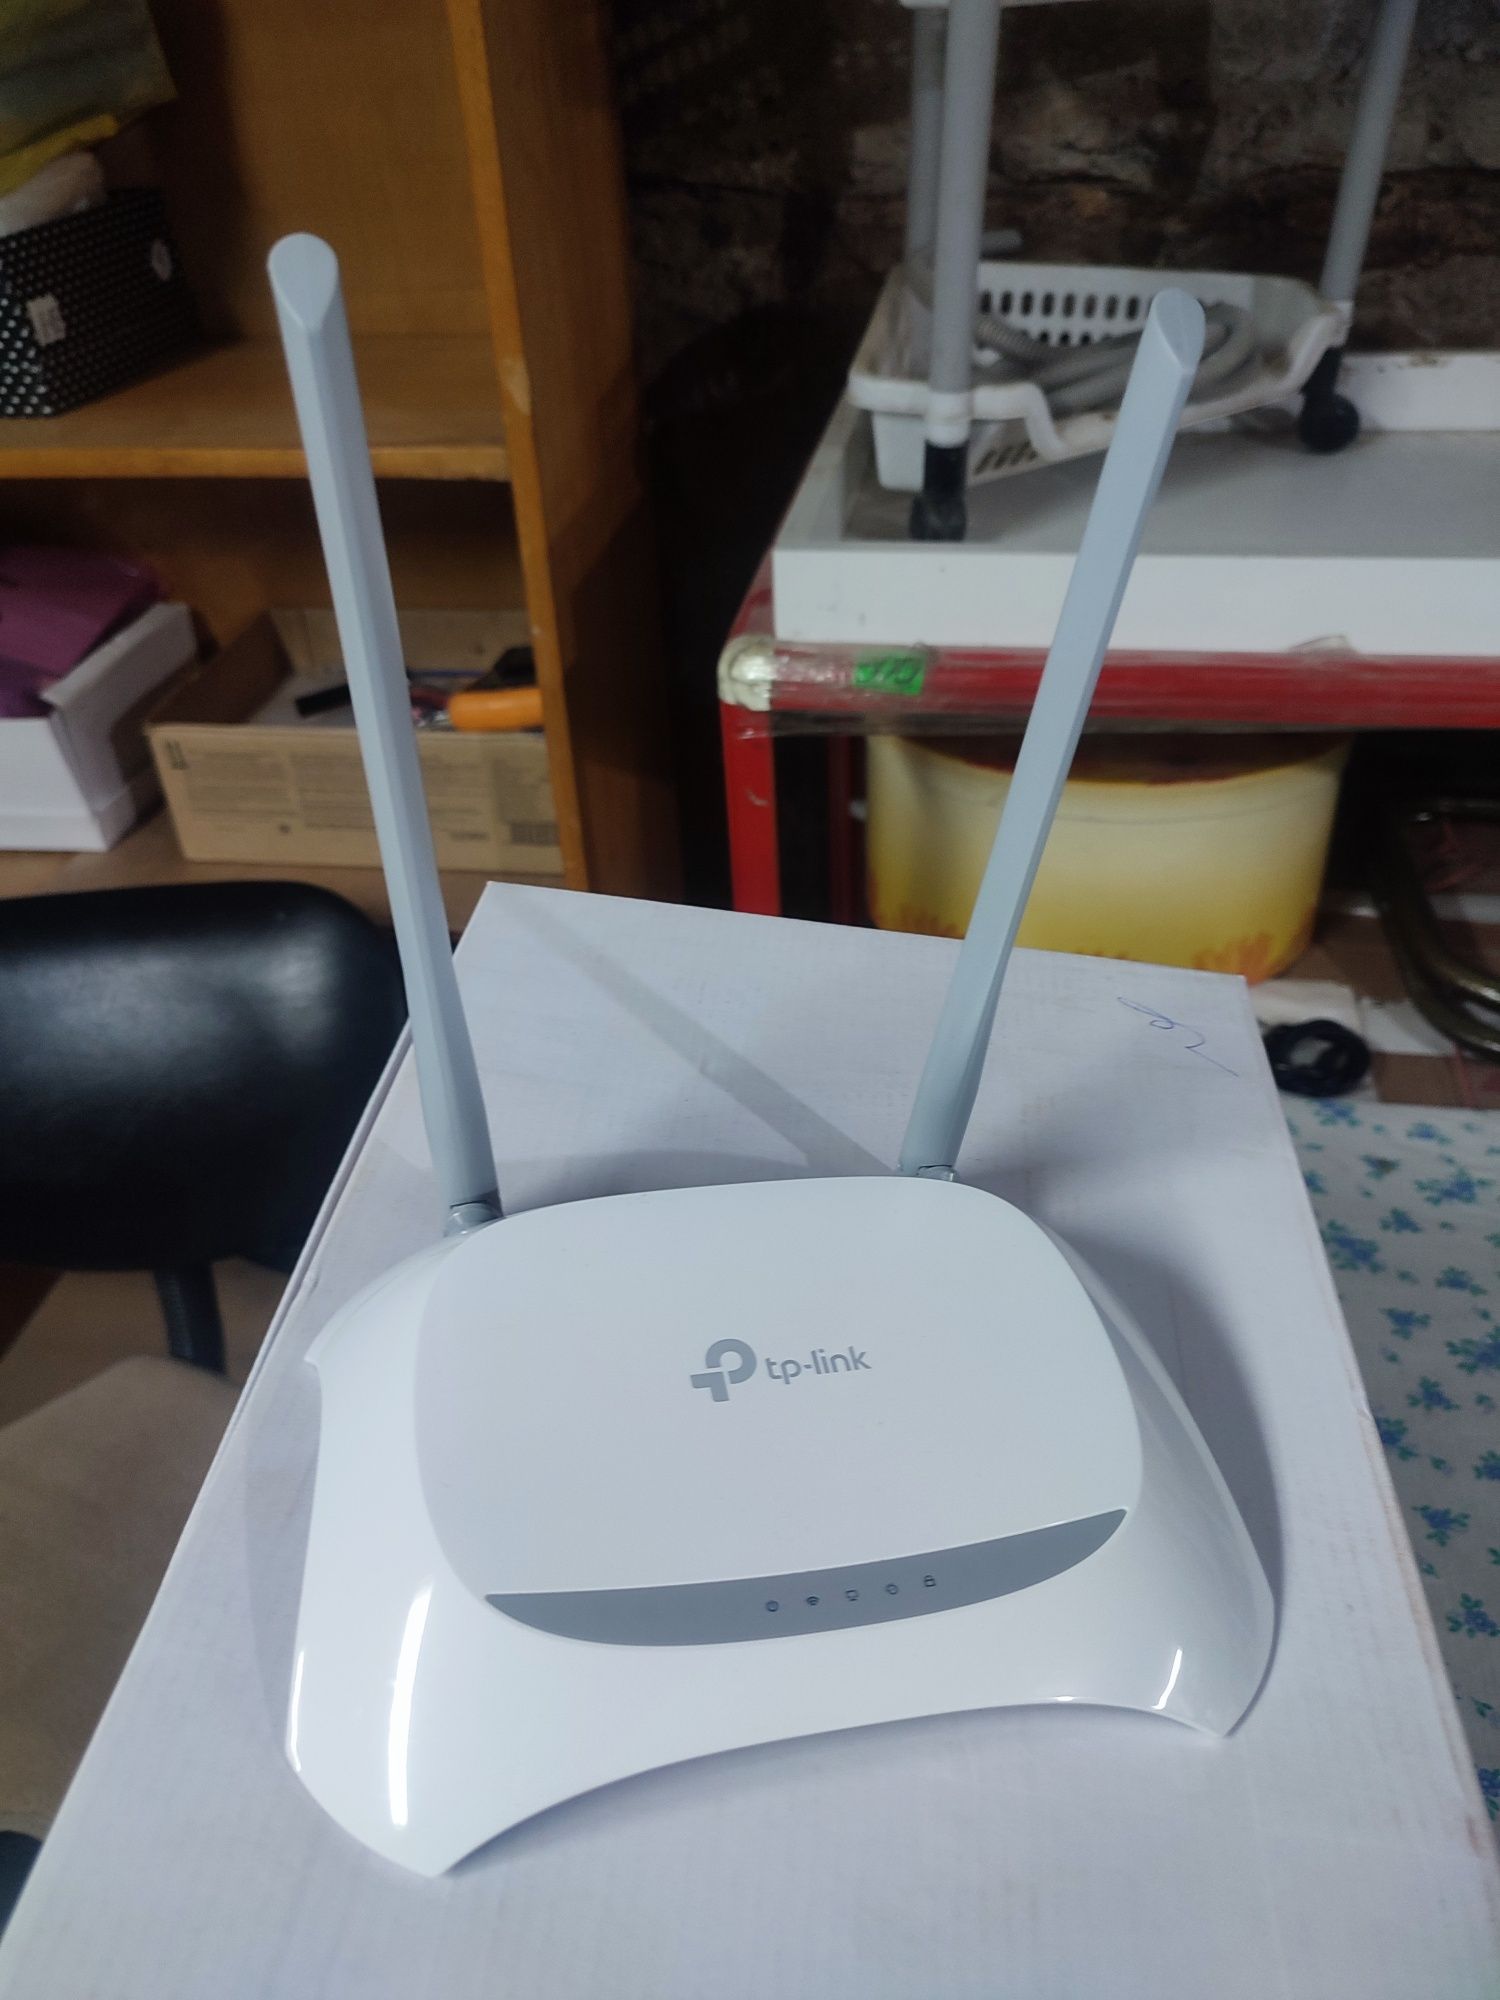 Продам Wi-fi роутер с ADSL модемом